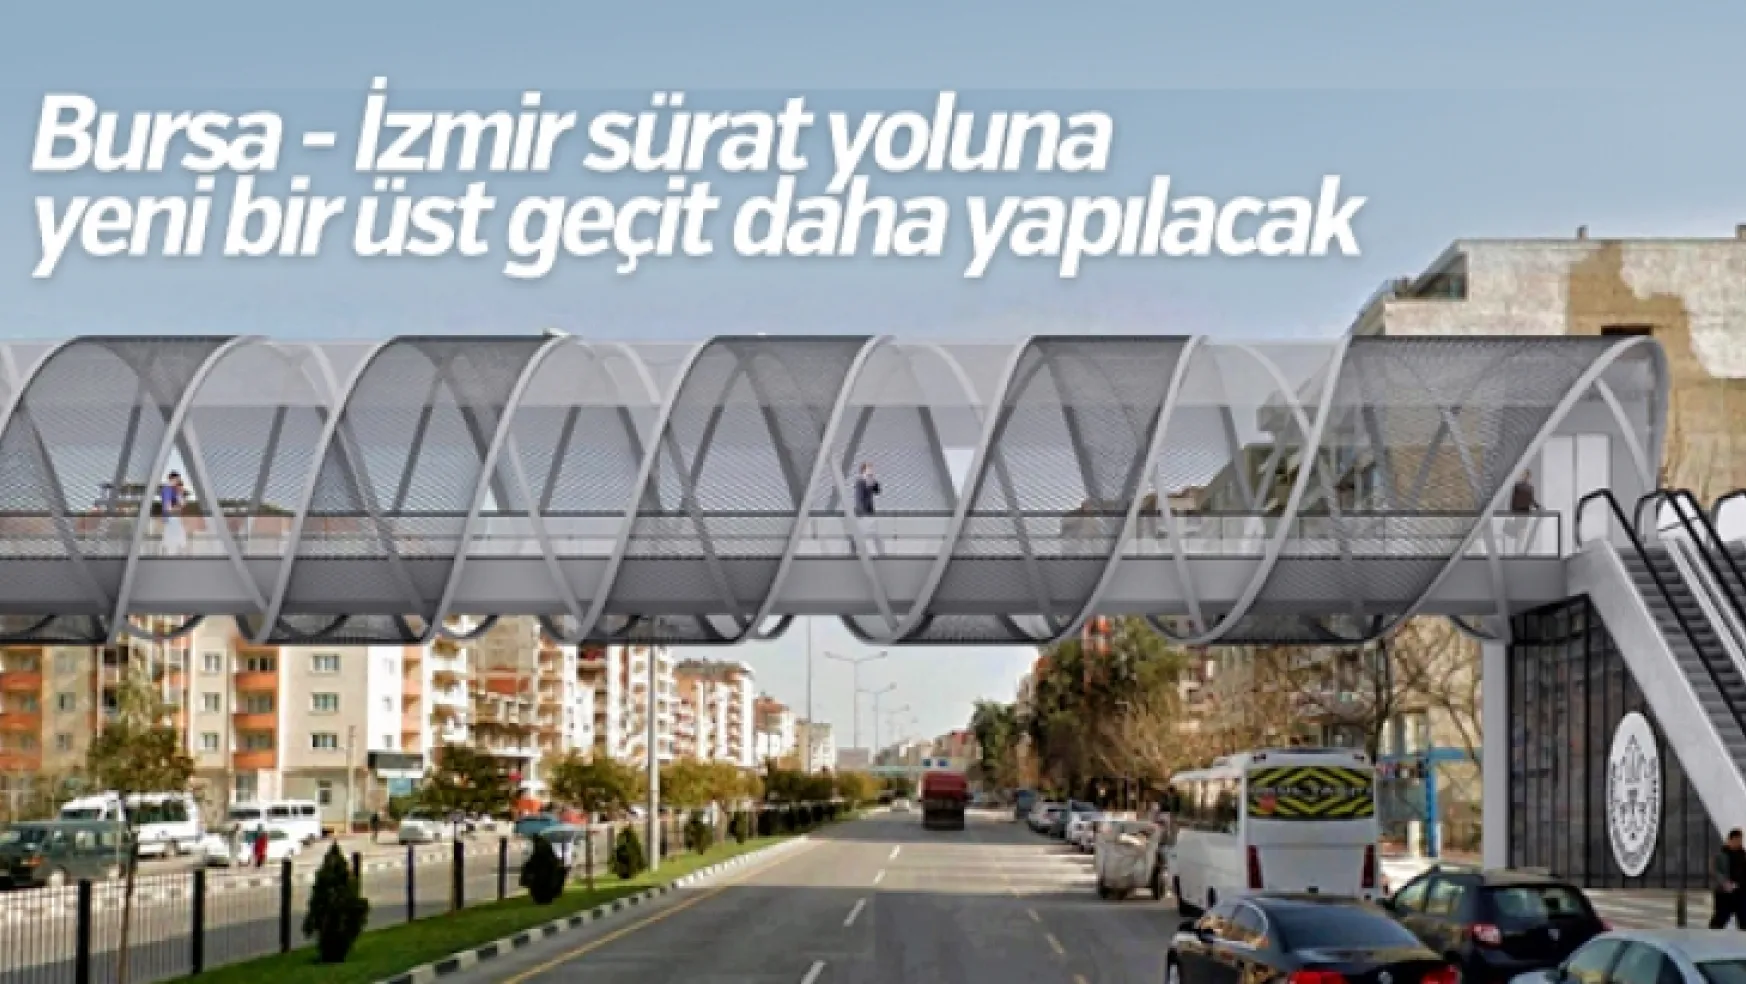 Bursa İzmir sürat yoluna yeni bir üst geçit daha geliyor